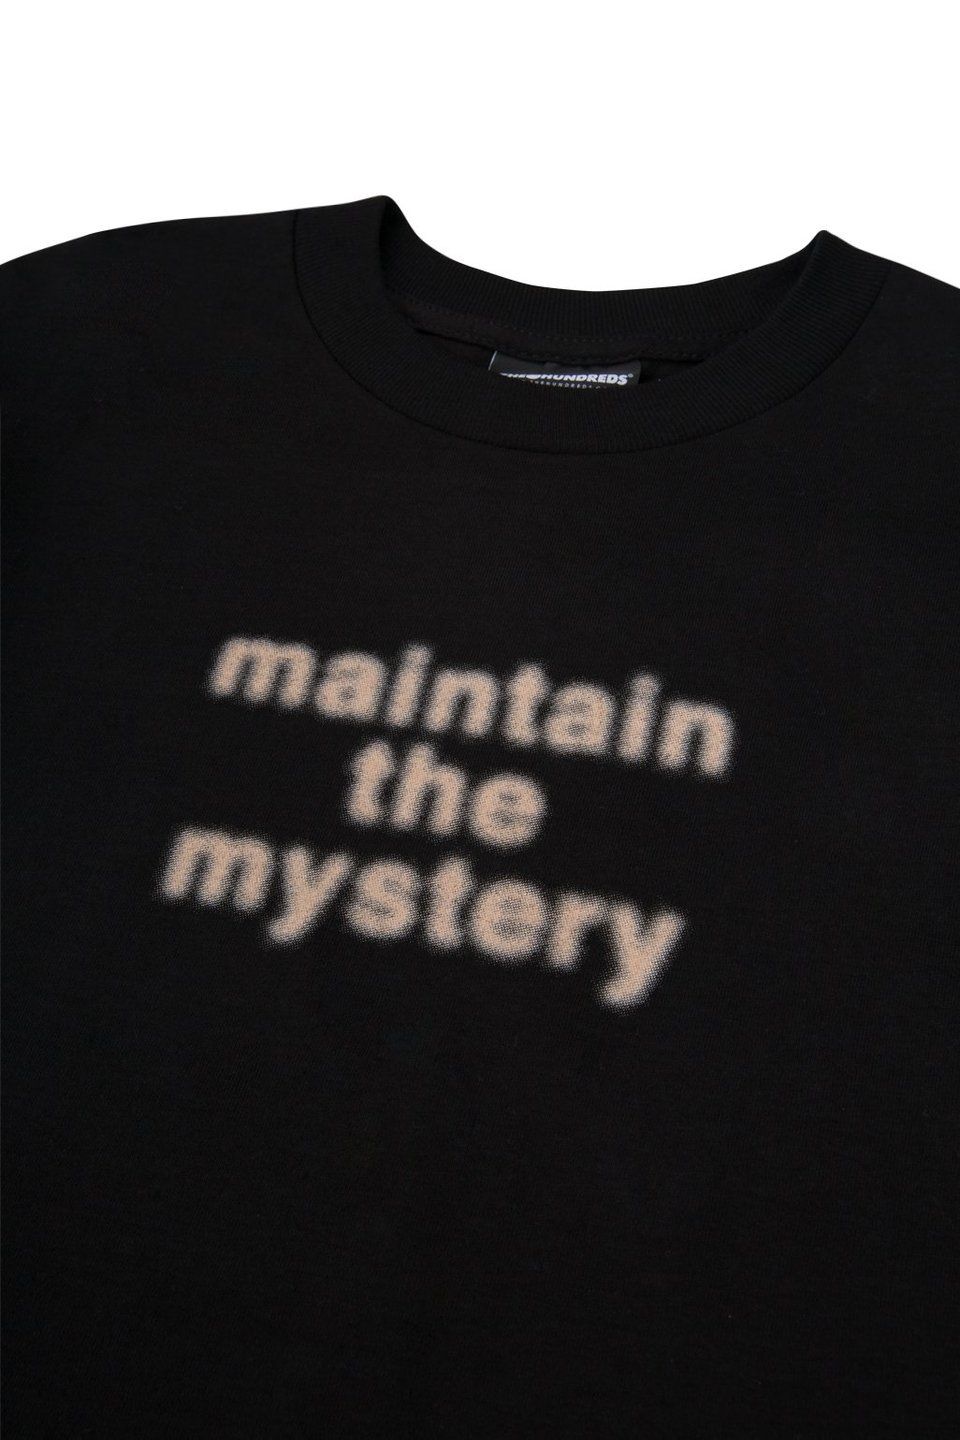 Katastrofe Kritisk Til ære for The Hundreds on Twitter: "MAINTAIN THE MYSTERY :: The "Sore Eyes" T-shirt,  available now :: https://t.co/d5kdgfMimB https://t.co/bYp3QrRvwq" / Twitter